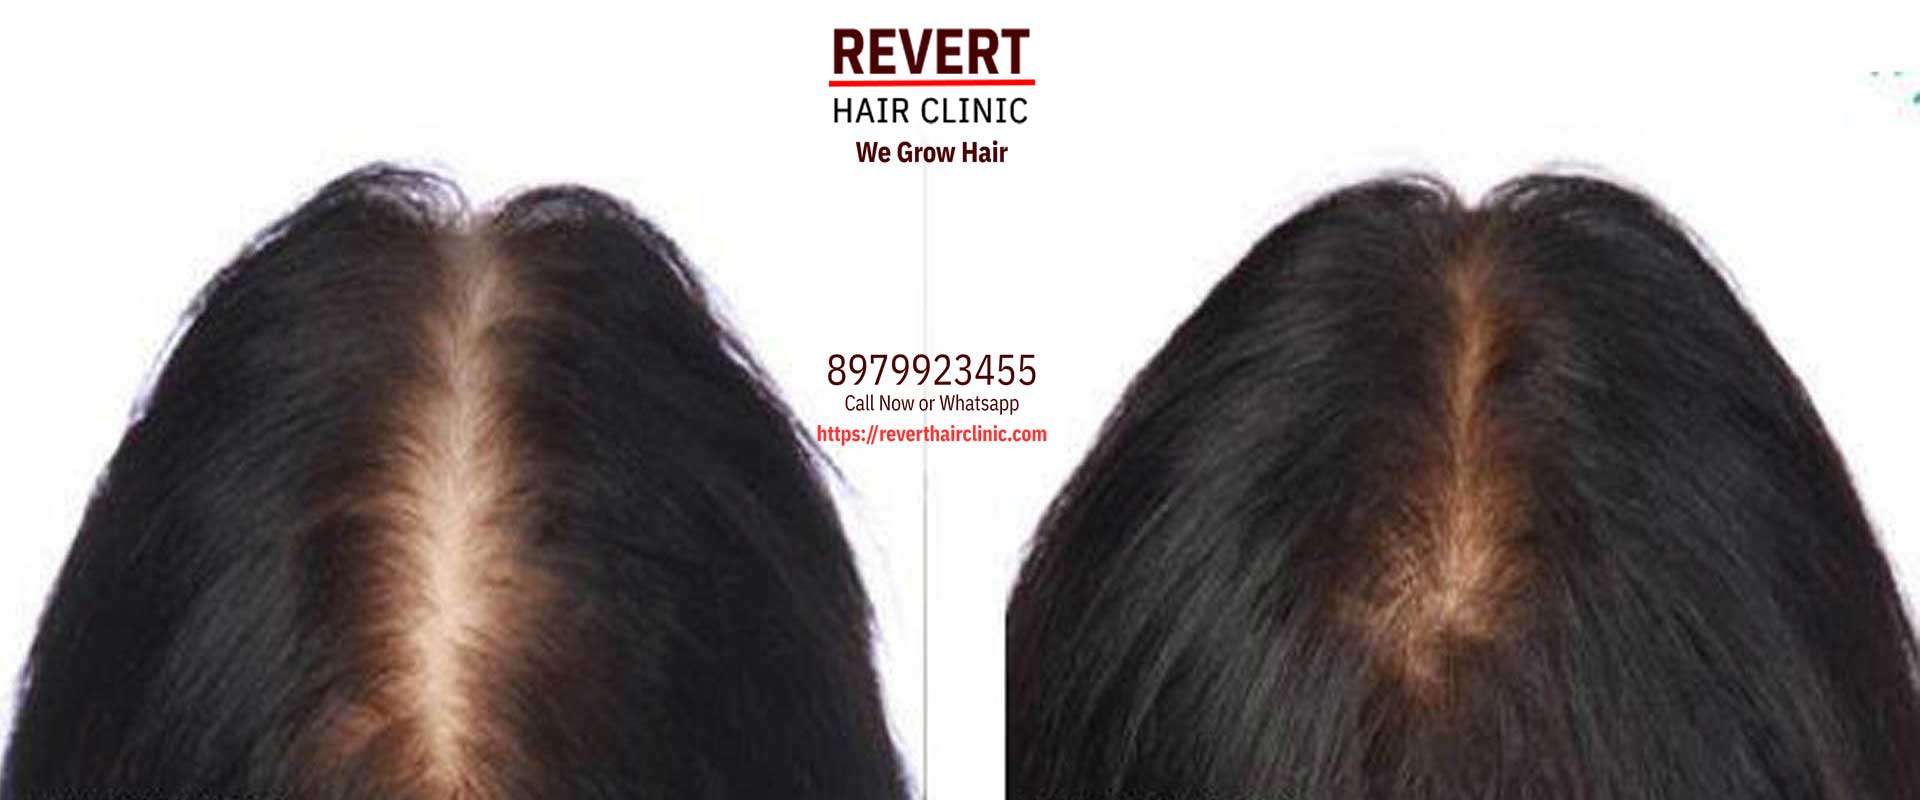 Revert Hair Clinic | Best hair Clinic | Hair Specialist Surgeon Dehradun